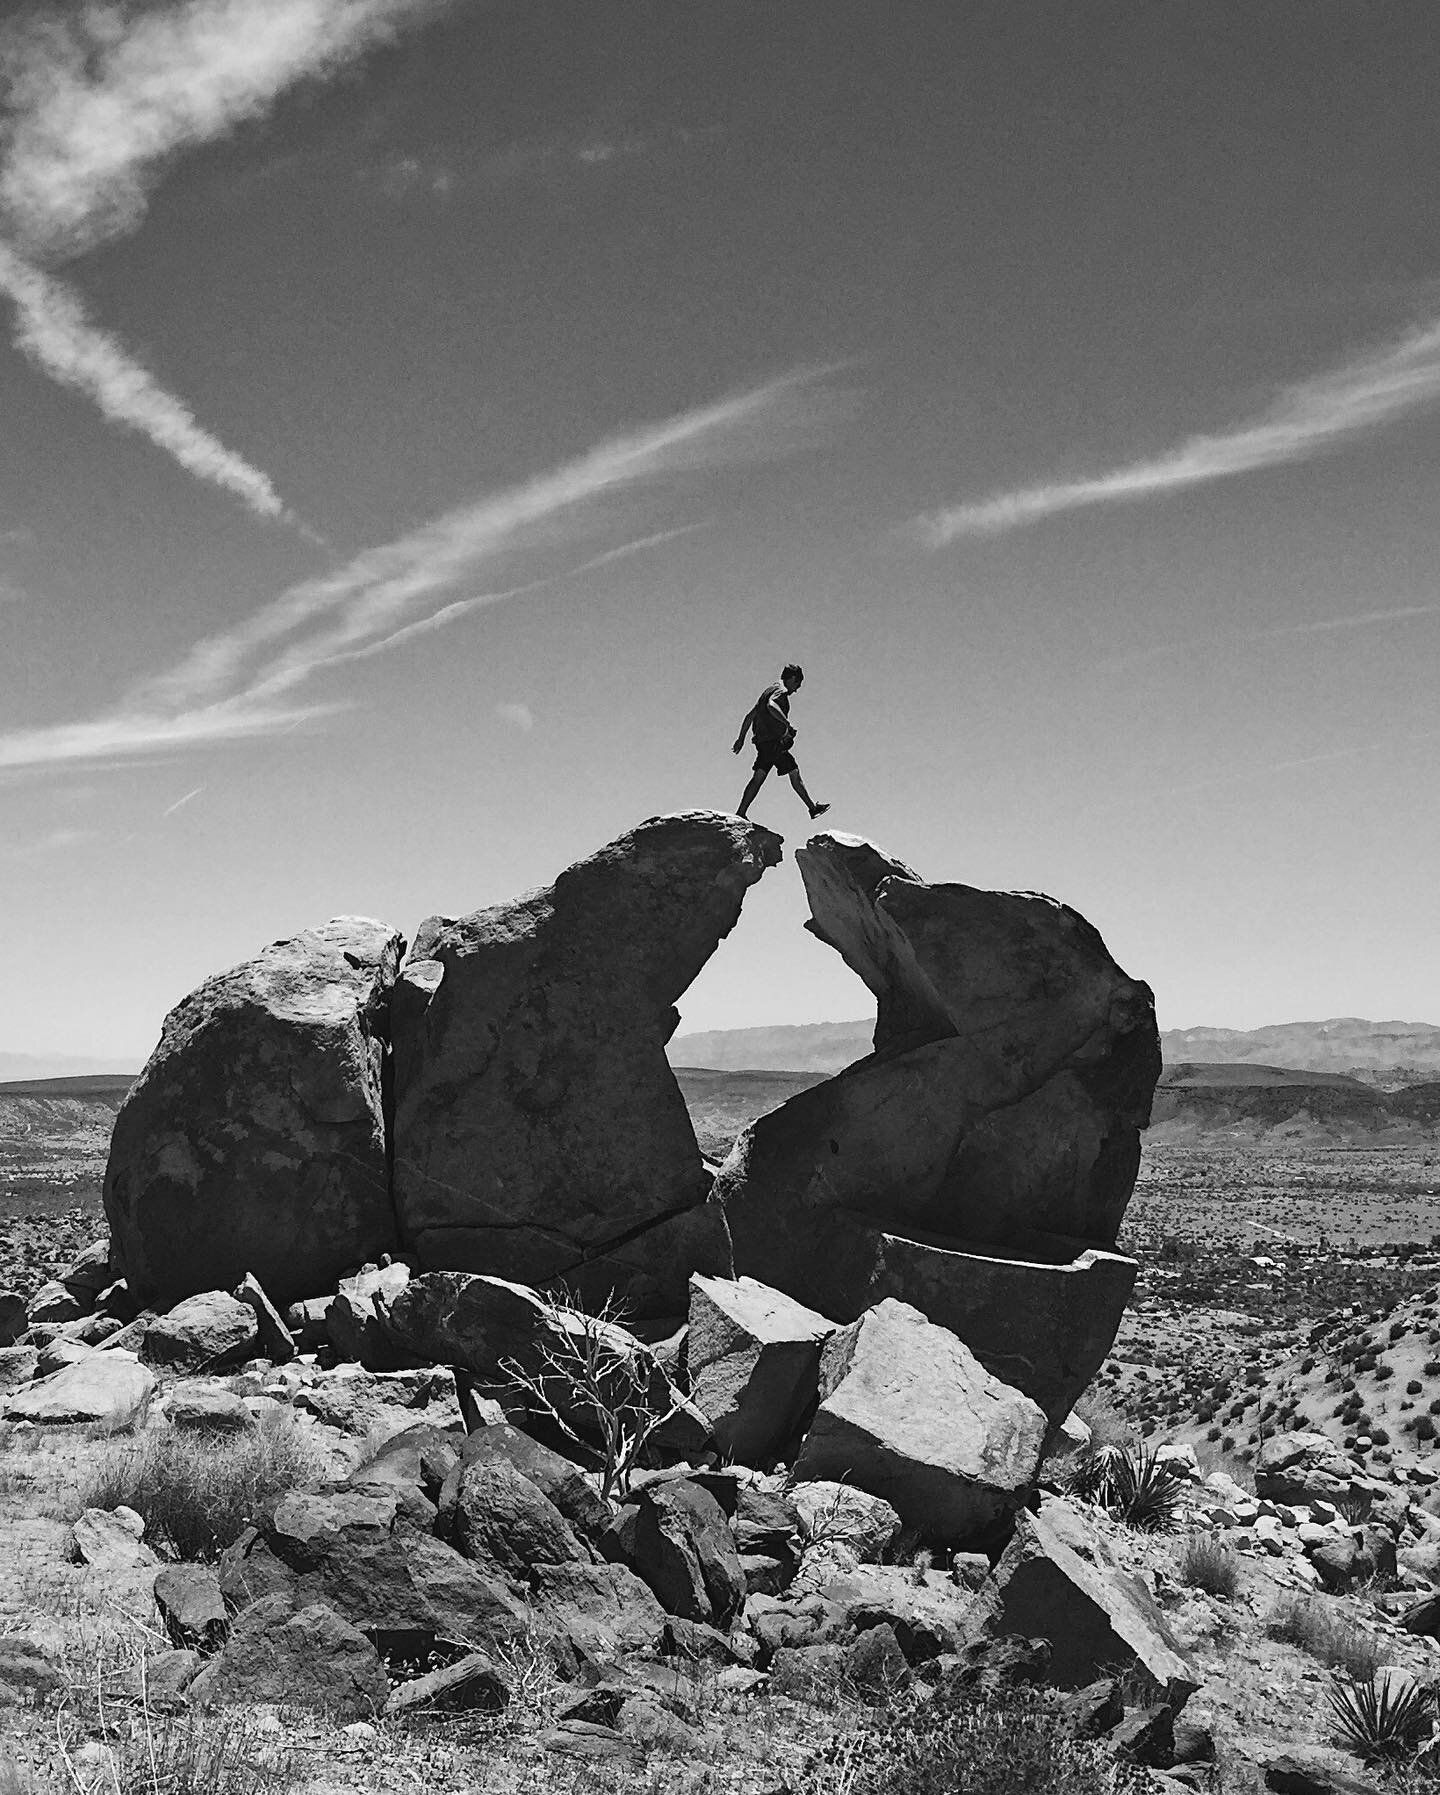 Walking into 2020 on the precipice. &ldquo;On the razor&rsquo;s edge&rdquo;. Claw Rock - Rimrock, CA.